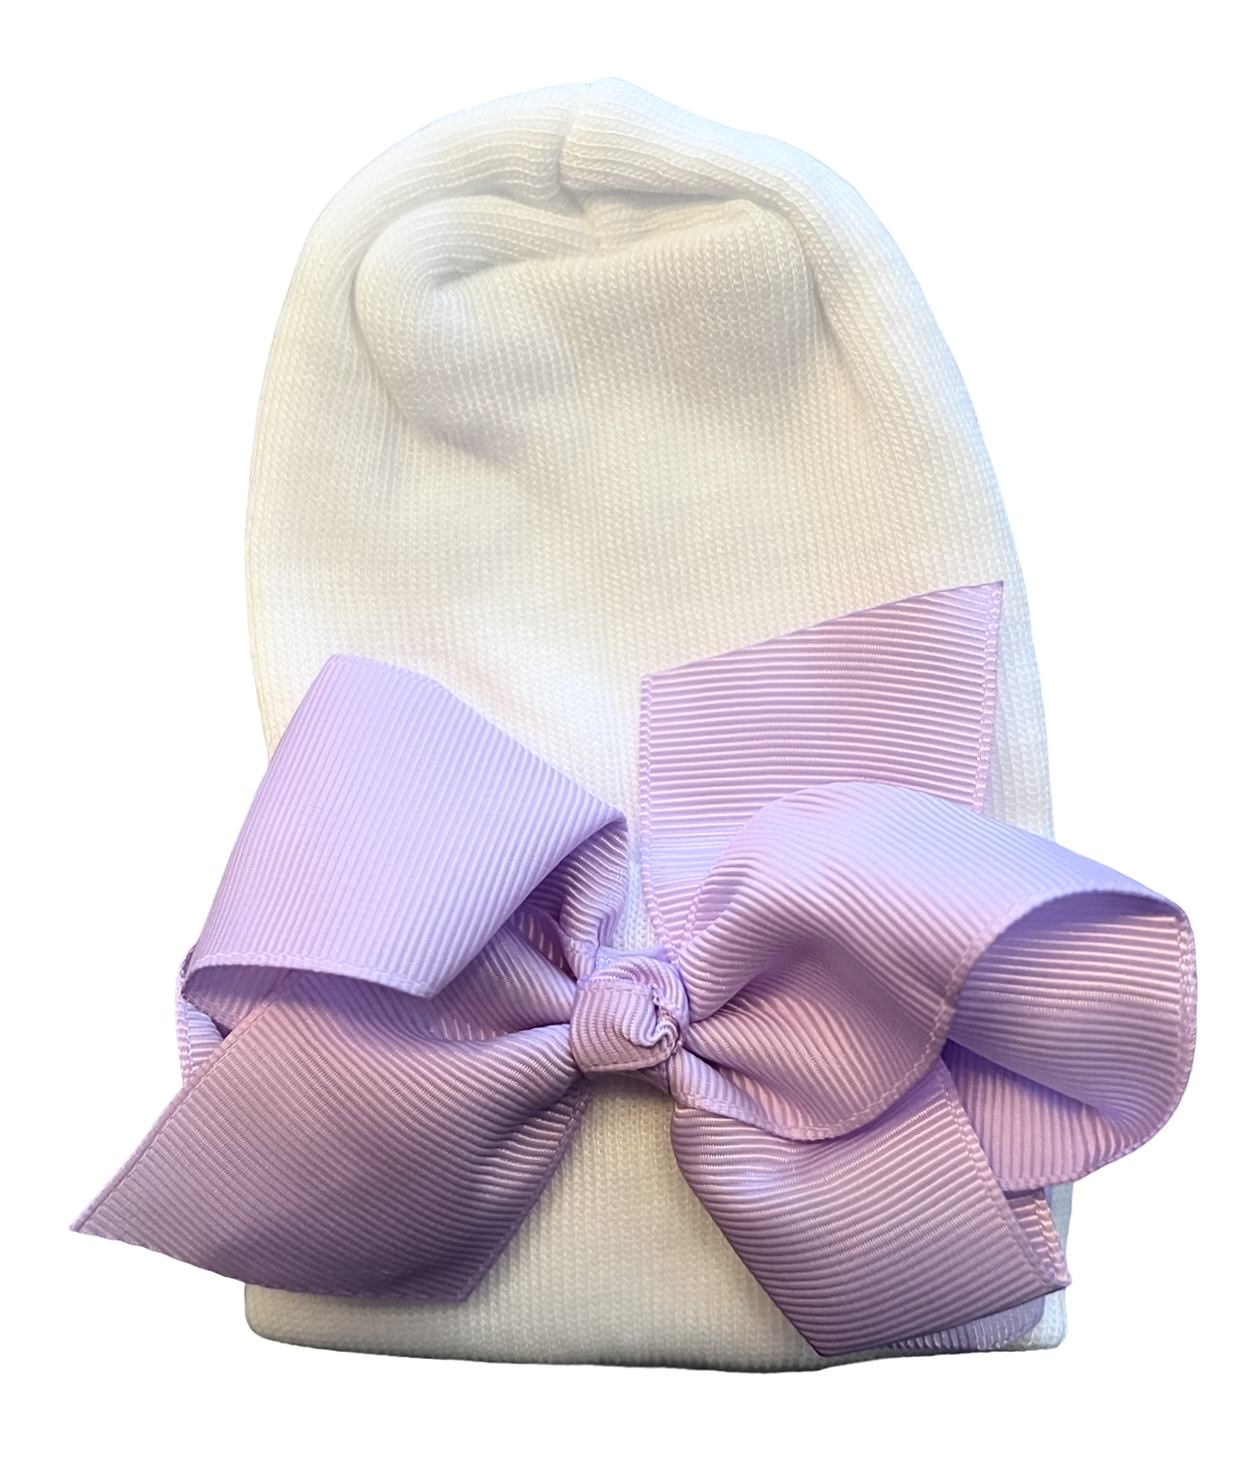 Neugeborenenmütze mit lila Schleife extra warm